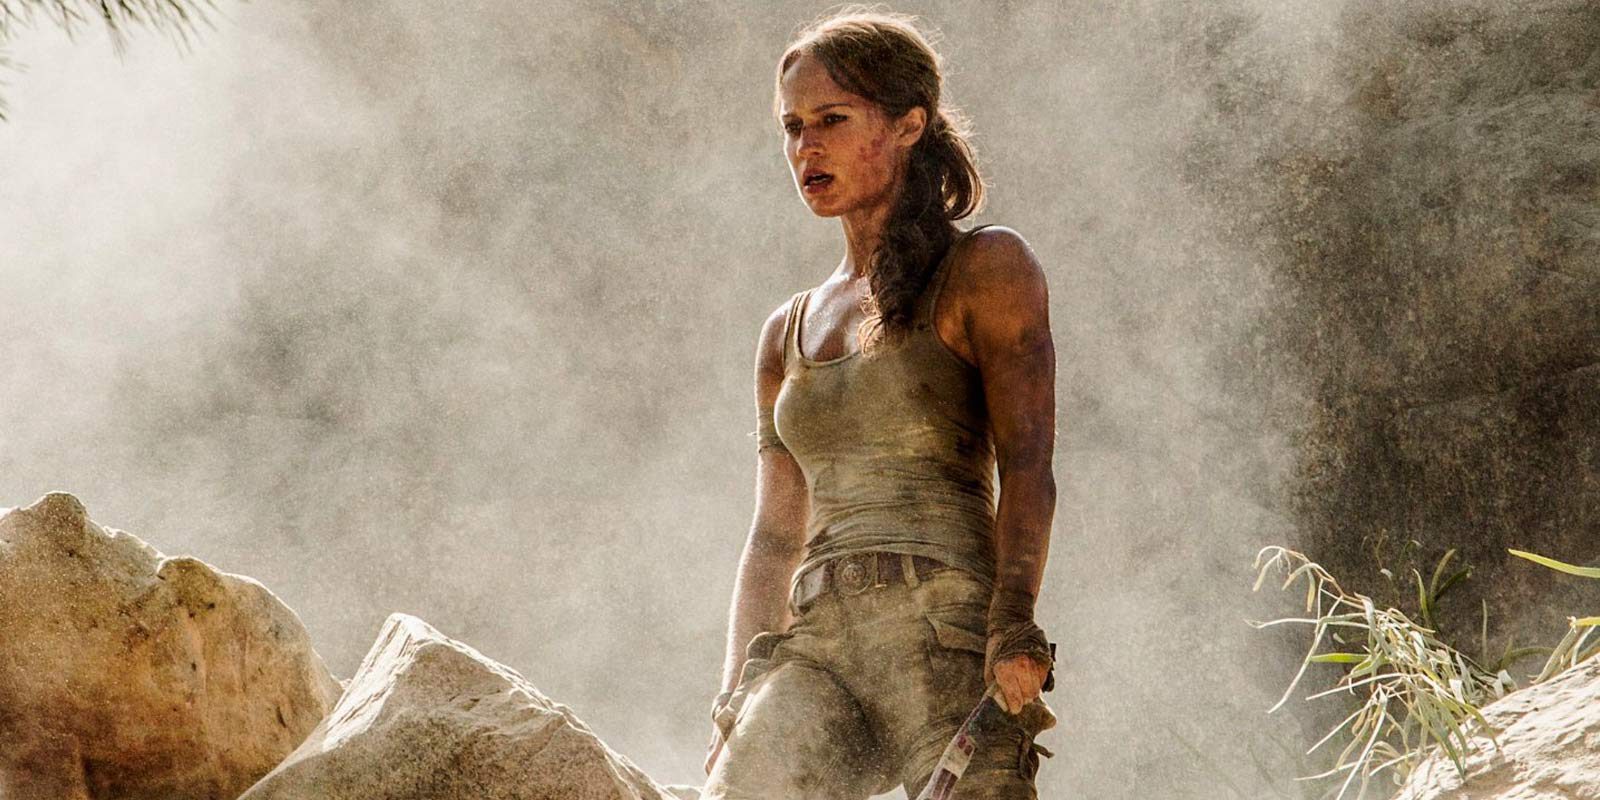 El tráiler de 'Tomb Raider' tiene mucho del juego original según una comparación entre ambos